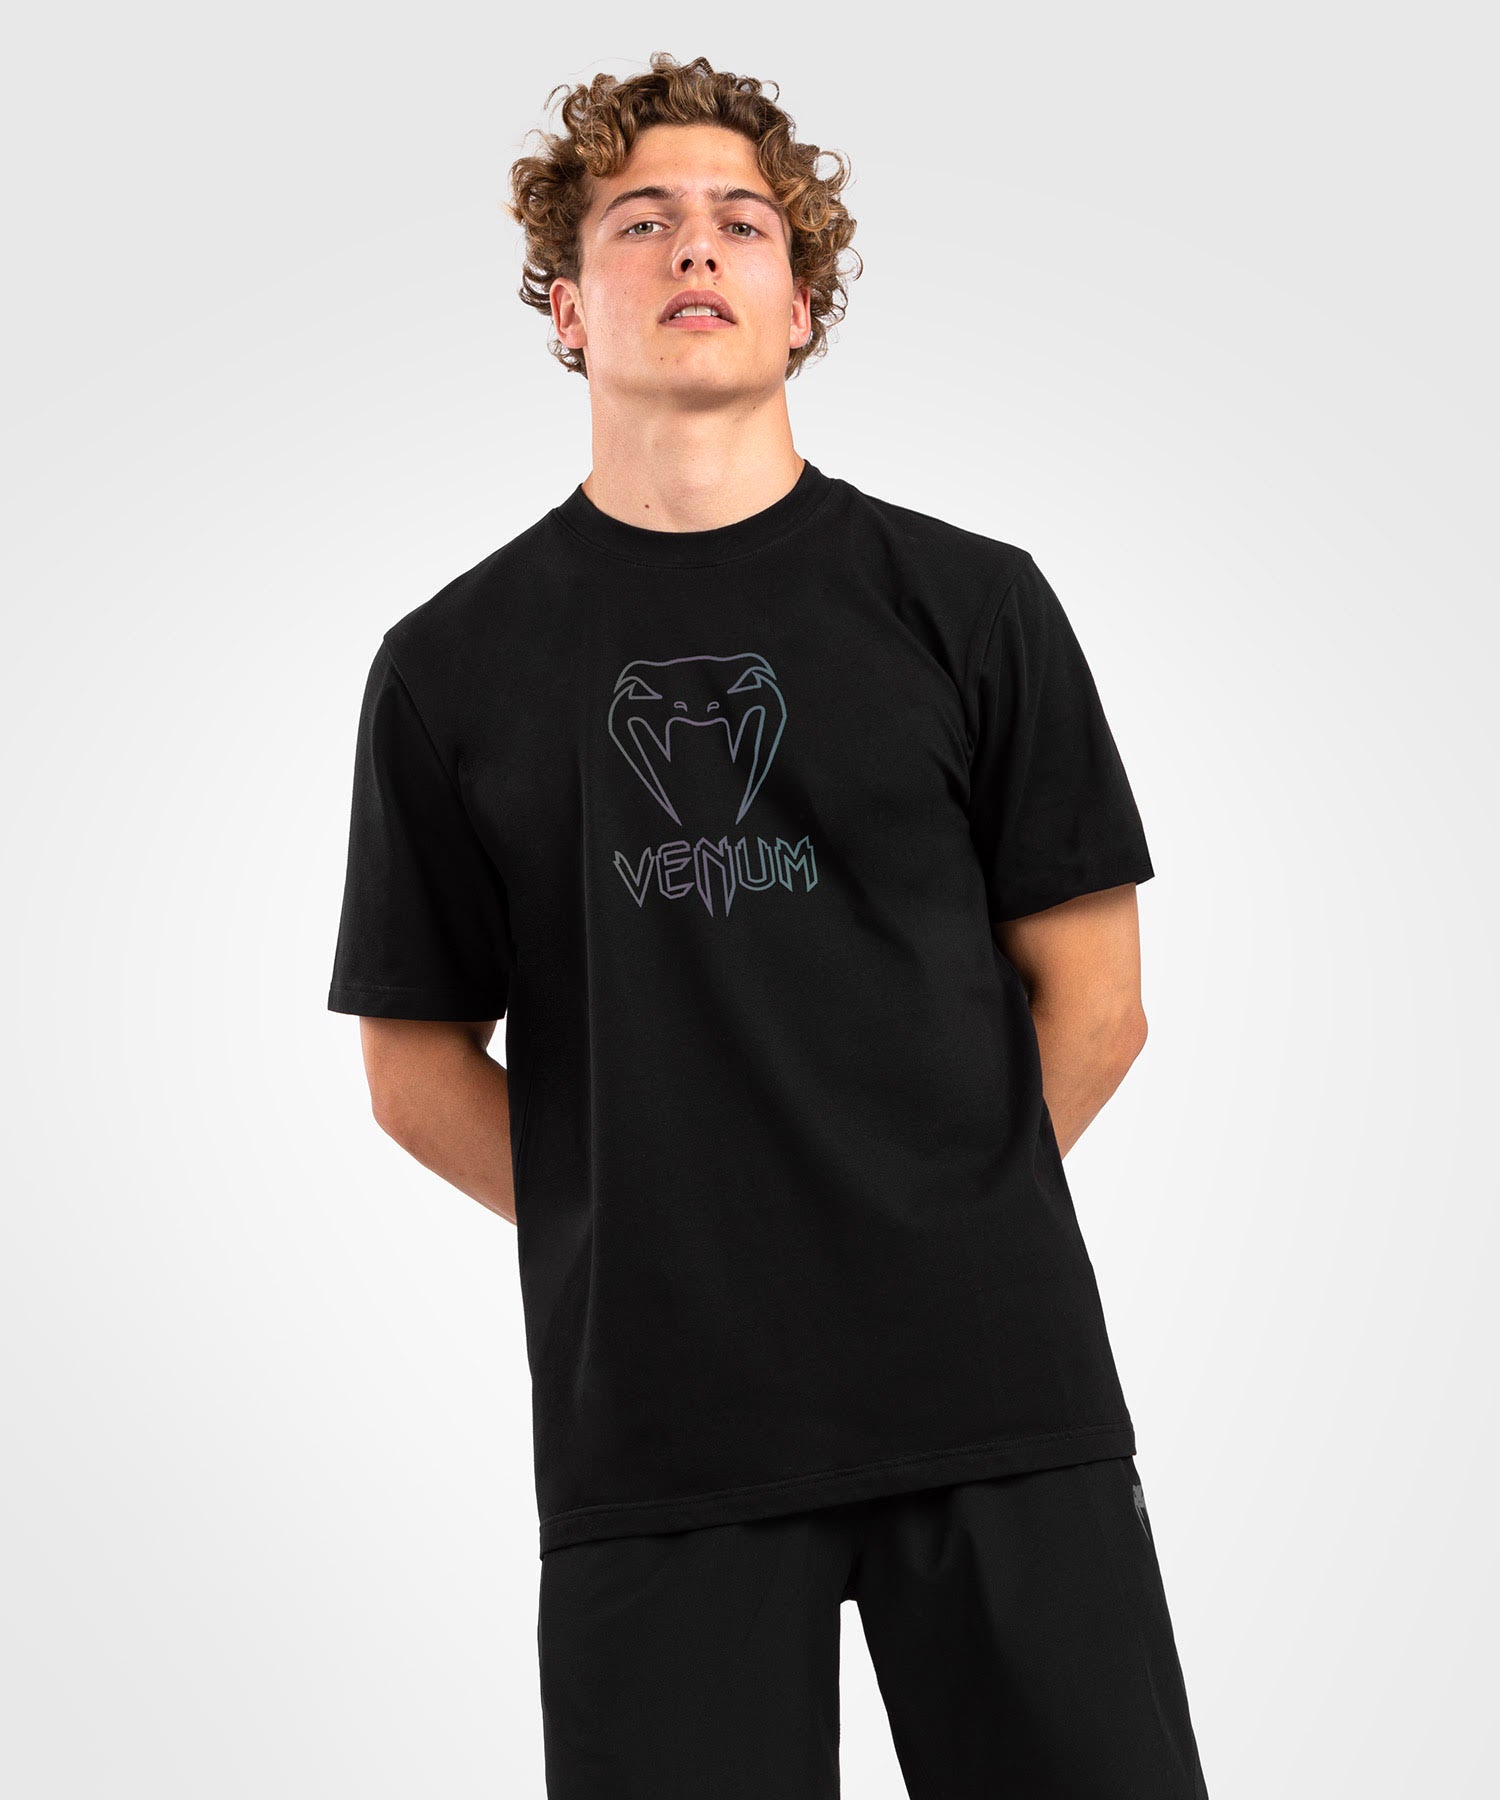 Tee-Shirt Venum Classic Noir - T-shirt